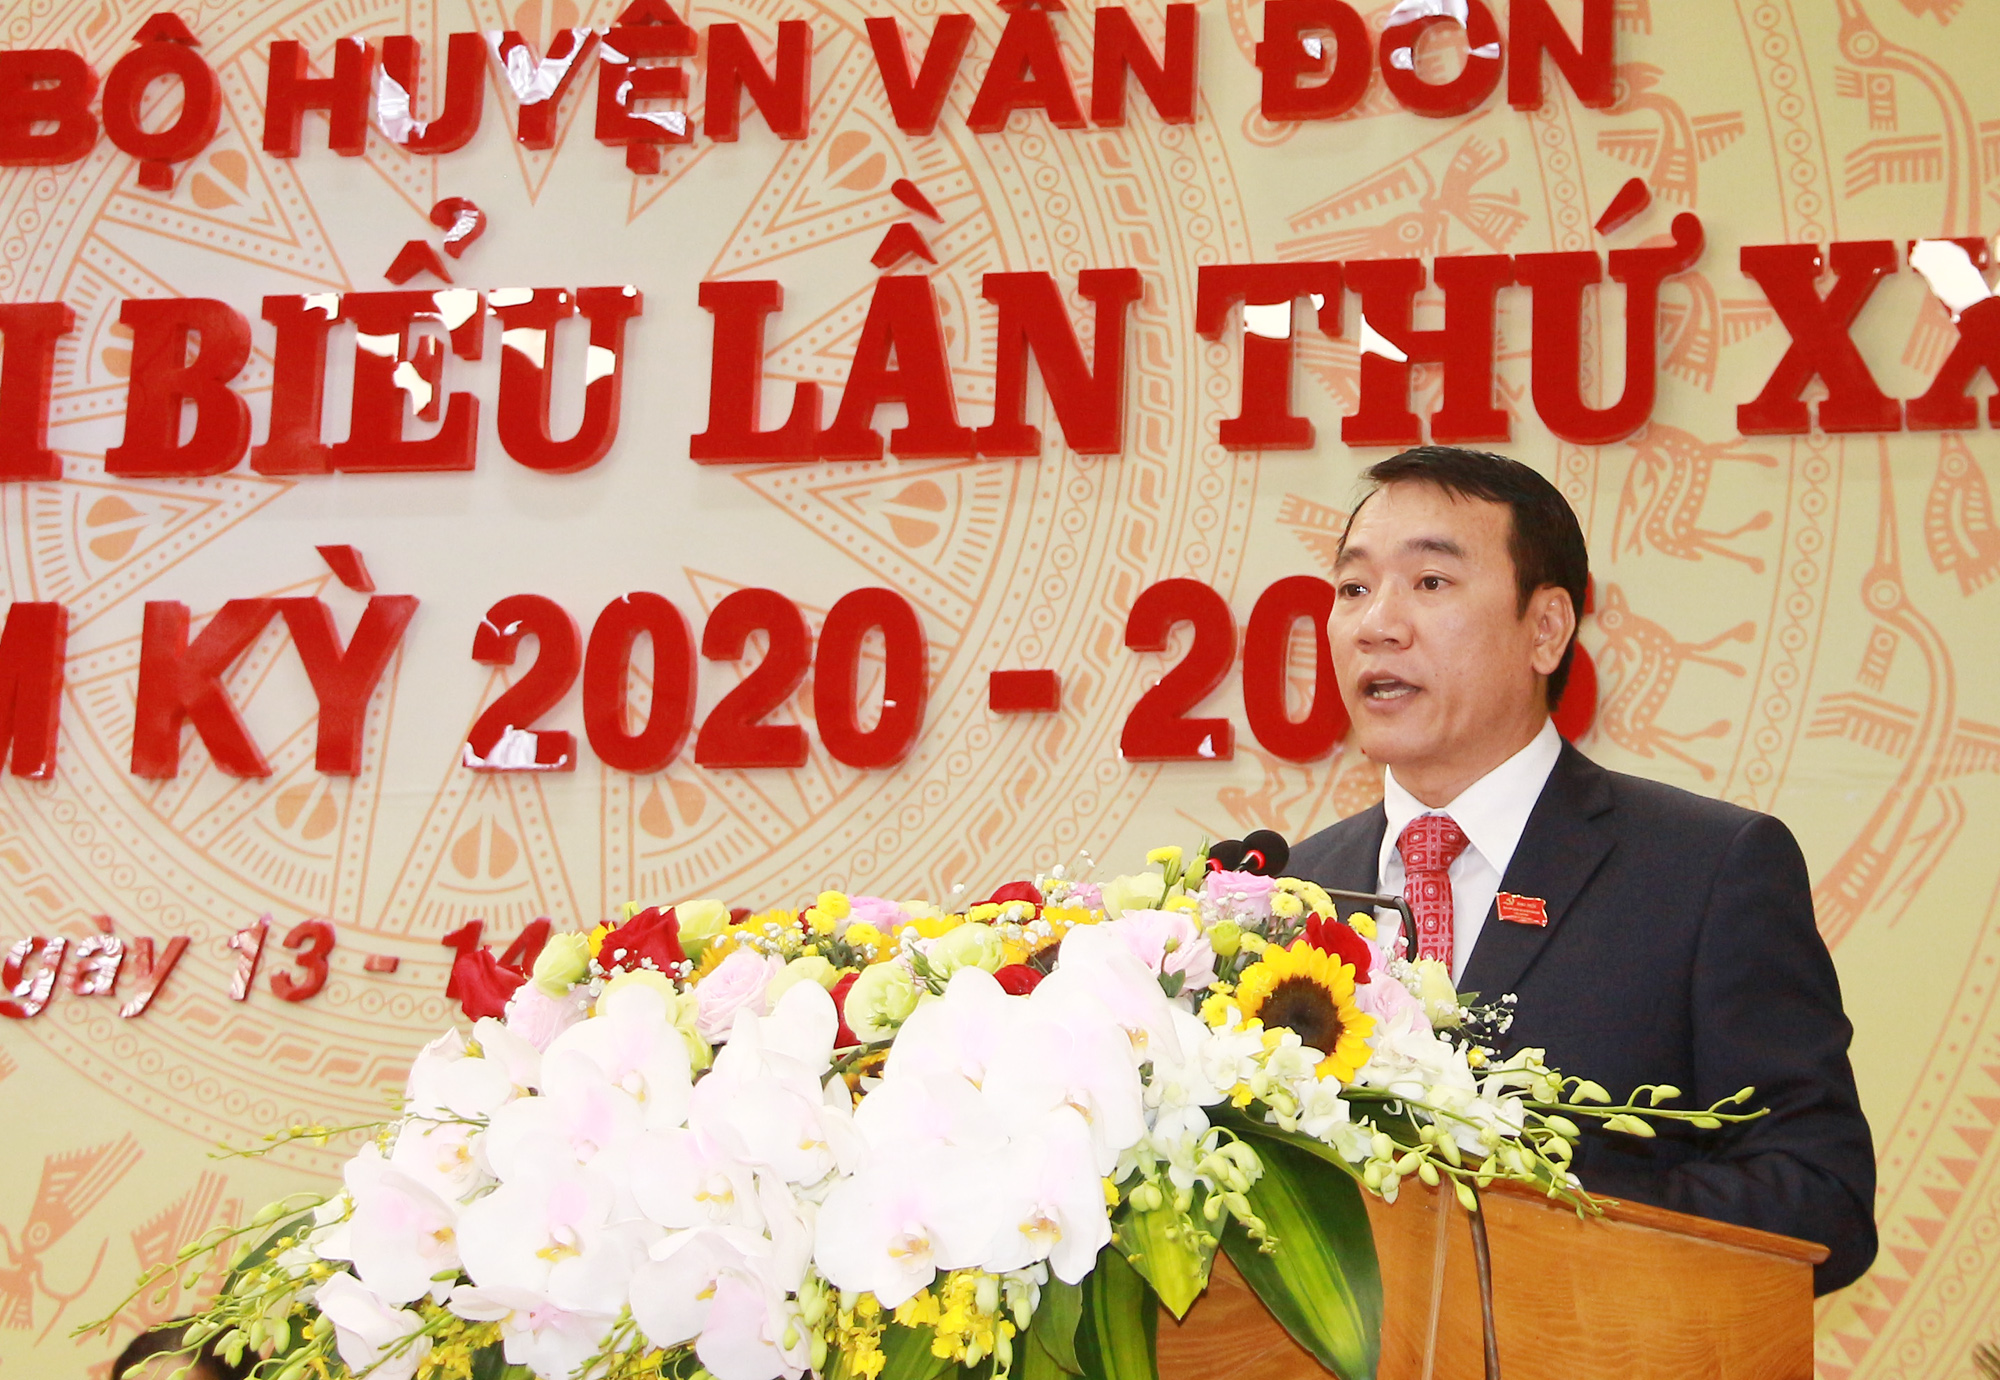 Đồng chí Tô Xuân Thao, Bí thư Huyện ủy Vân Đồn, trình bày báo cáo chính trị tại Đại hội.